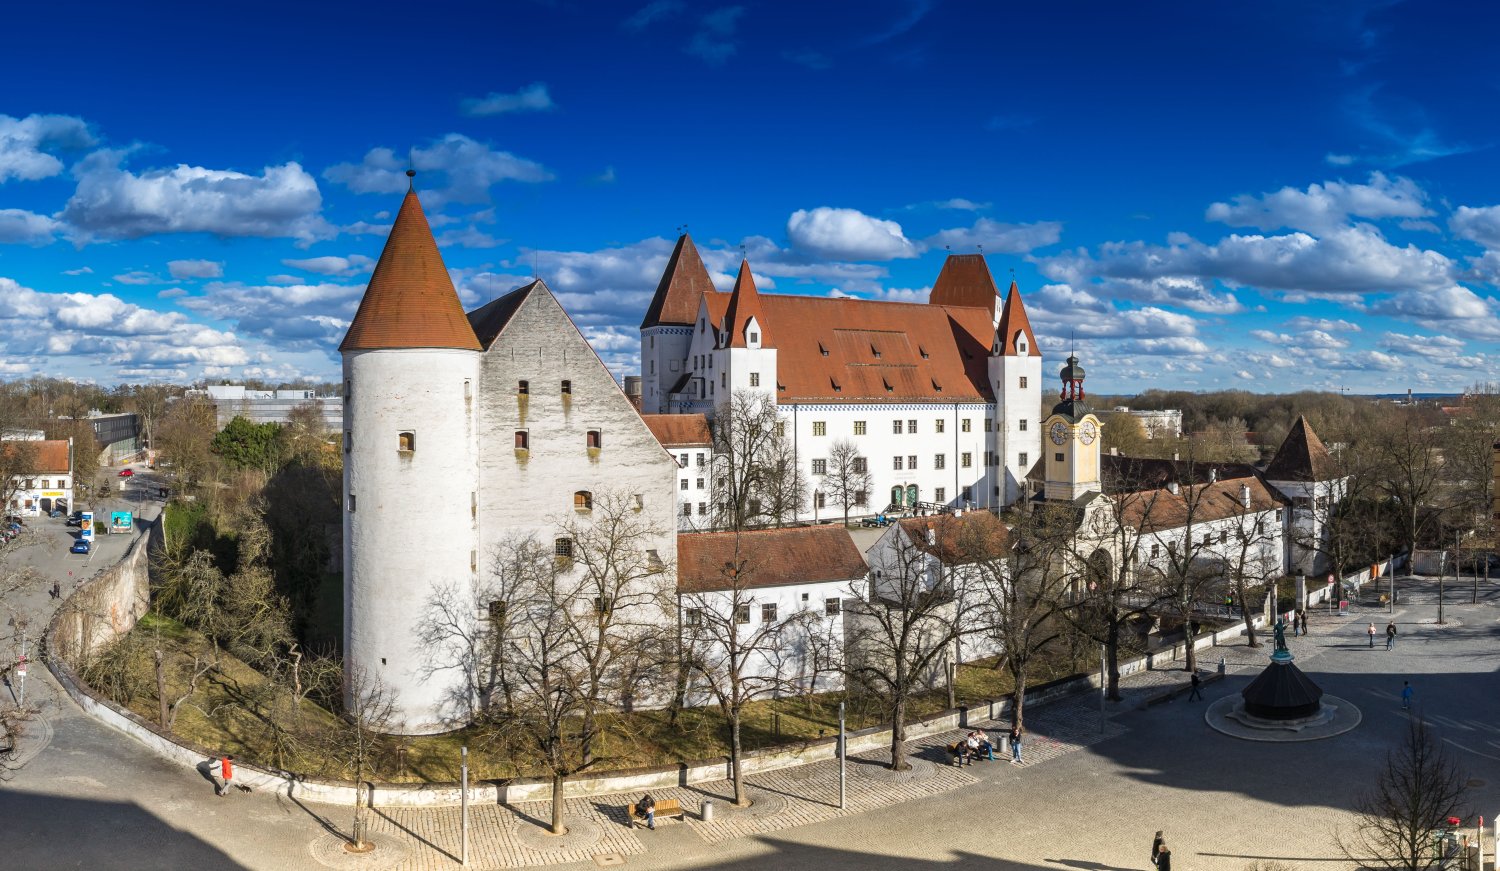 Neues Schloss, Aufnahme von Westen, im Vordergrund links das Zeughaus aus dem 15. Jahrhundert, rechts das Hauptgebäude, der Palas (fertiggestellt um 1500) © Bayerisches Armeemuseum (Foto: Erich Reisinger)